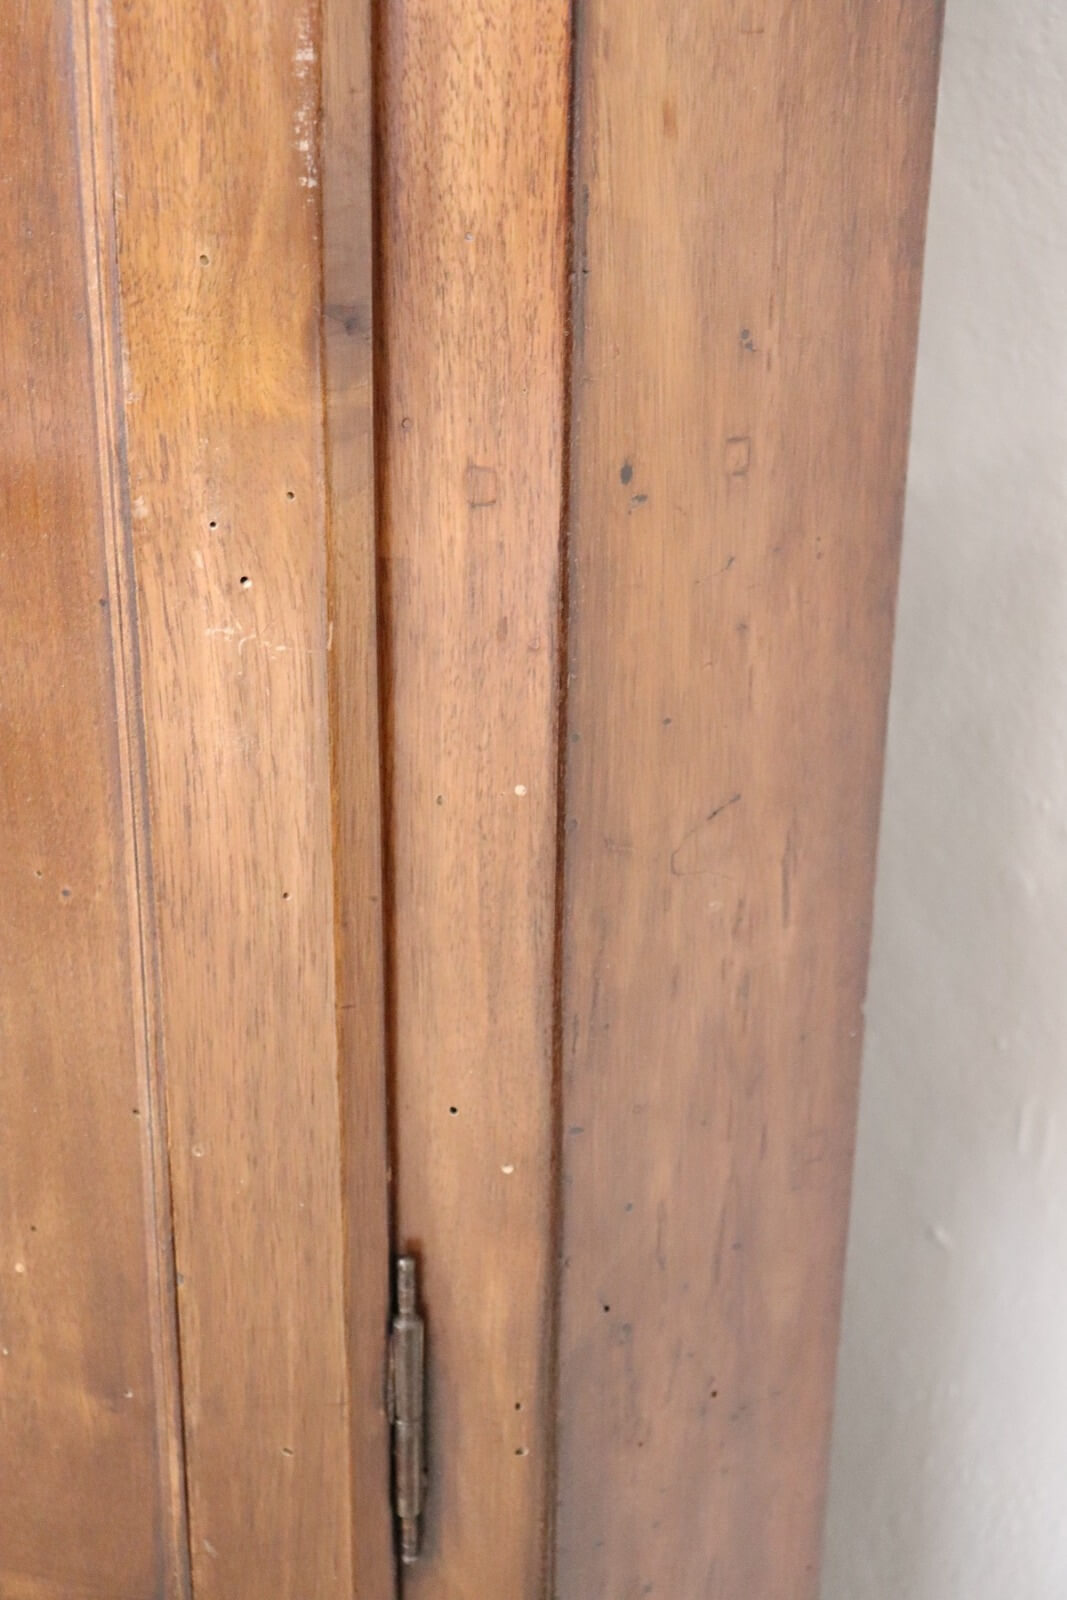 Angoliera indiana in legno massello intagliata 53x182x32 codice